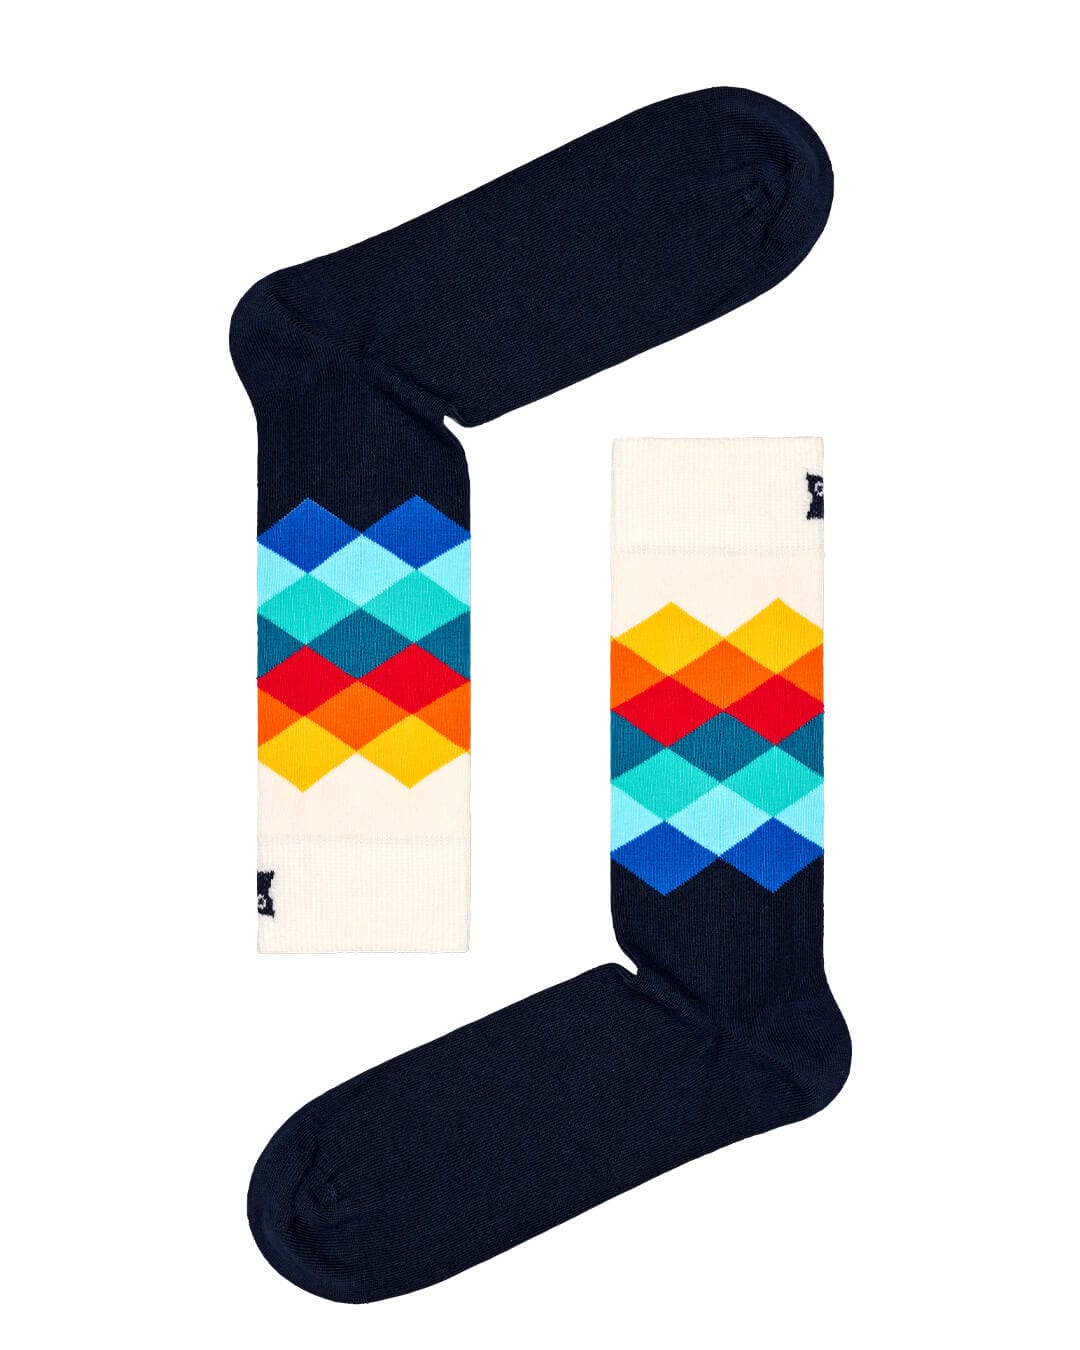 Happy Socks Socks Happy Socks 4-Pack Multi-color Socks Gift Set